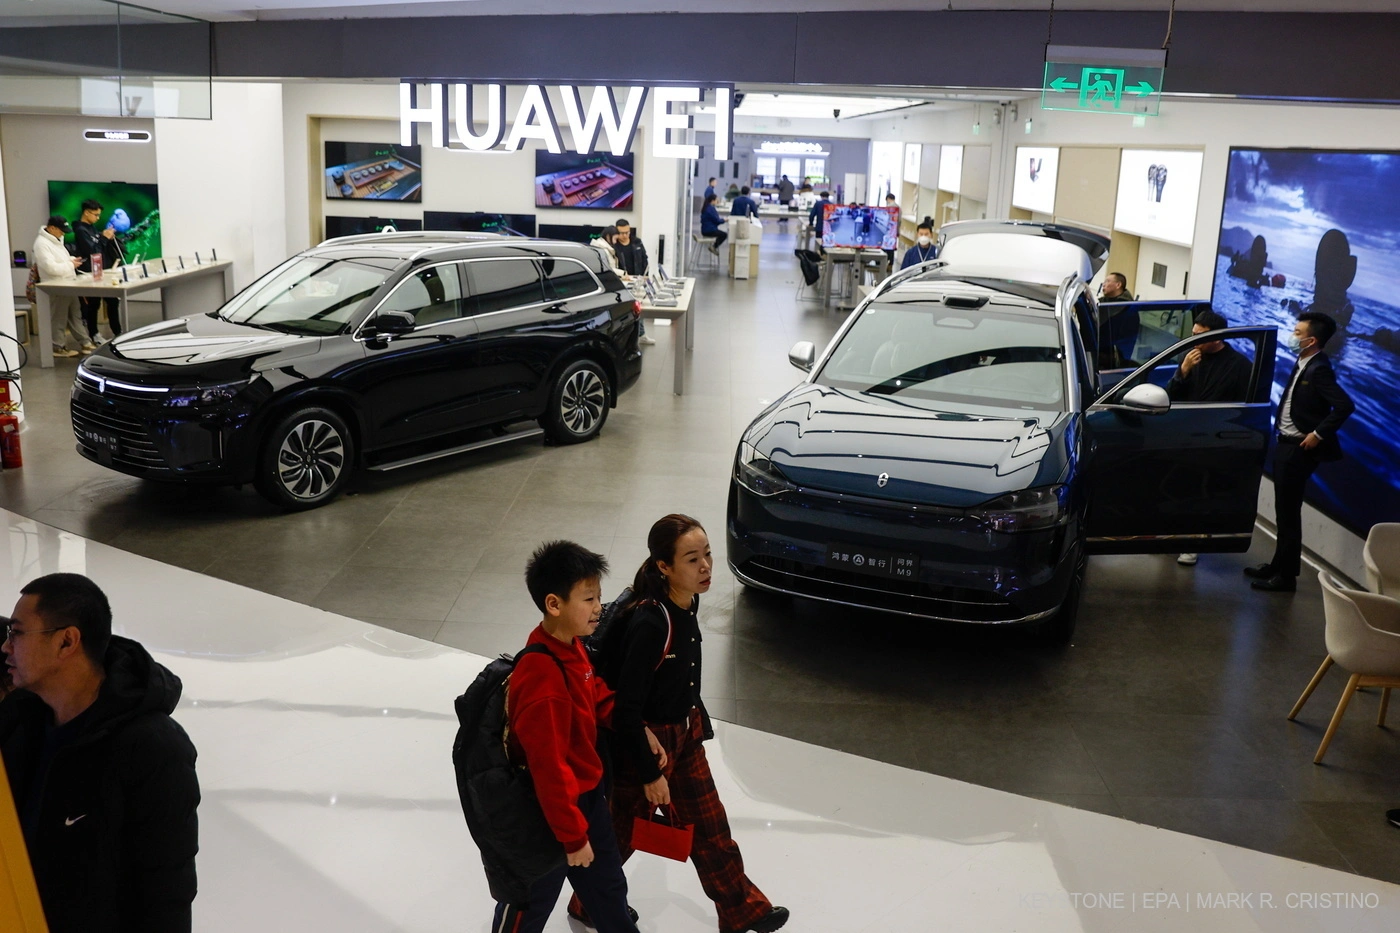 Der Huawei Aito 7 (l) und Huawei Aito M9 (R) können in einem Handyshop im Einkaufszentrum in Peking gekauft werden. Foto: Key/M.R. Christino